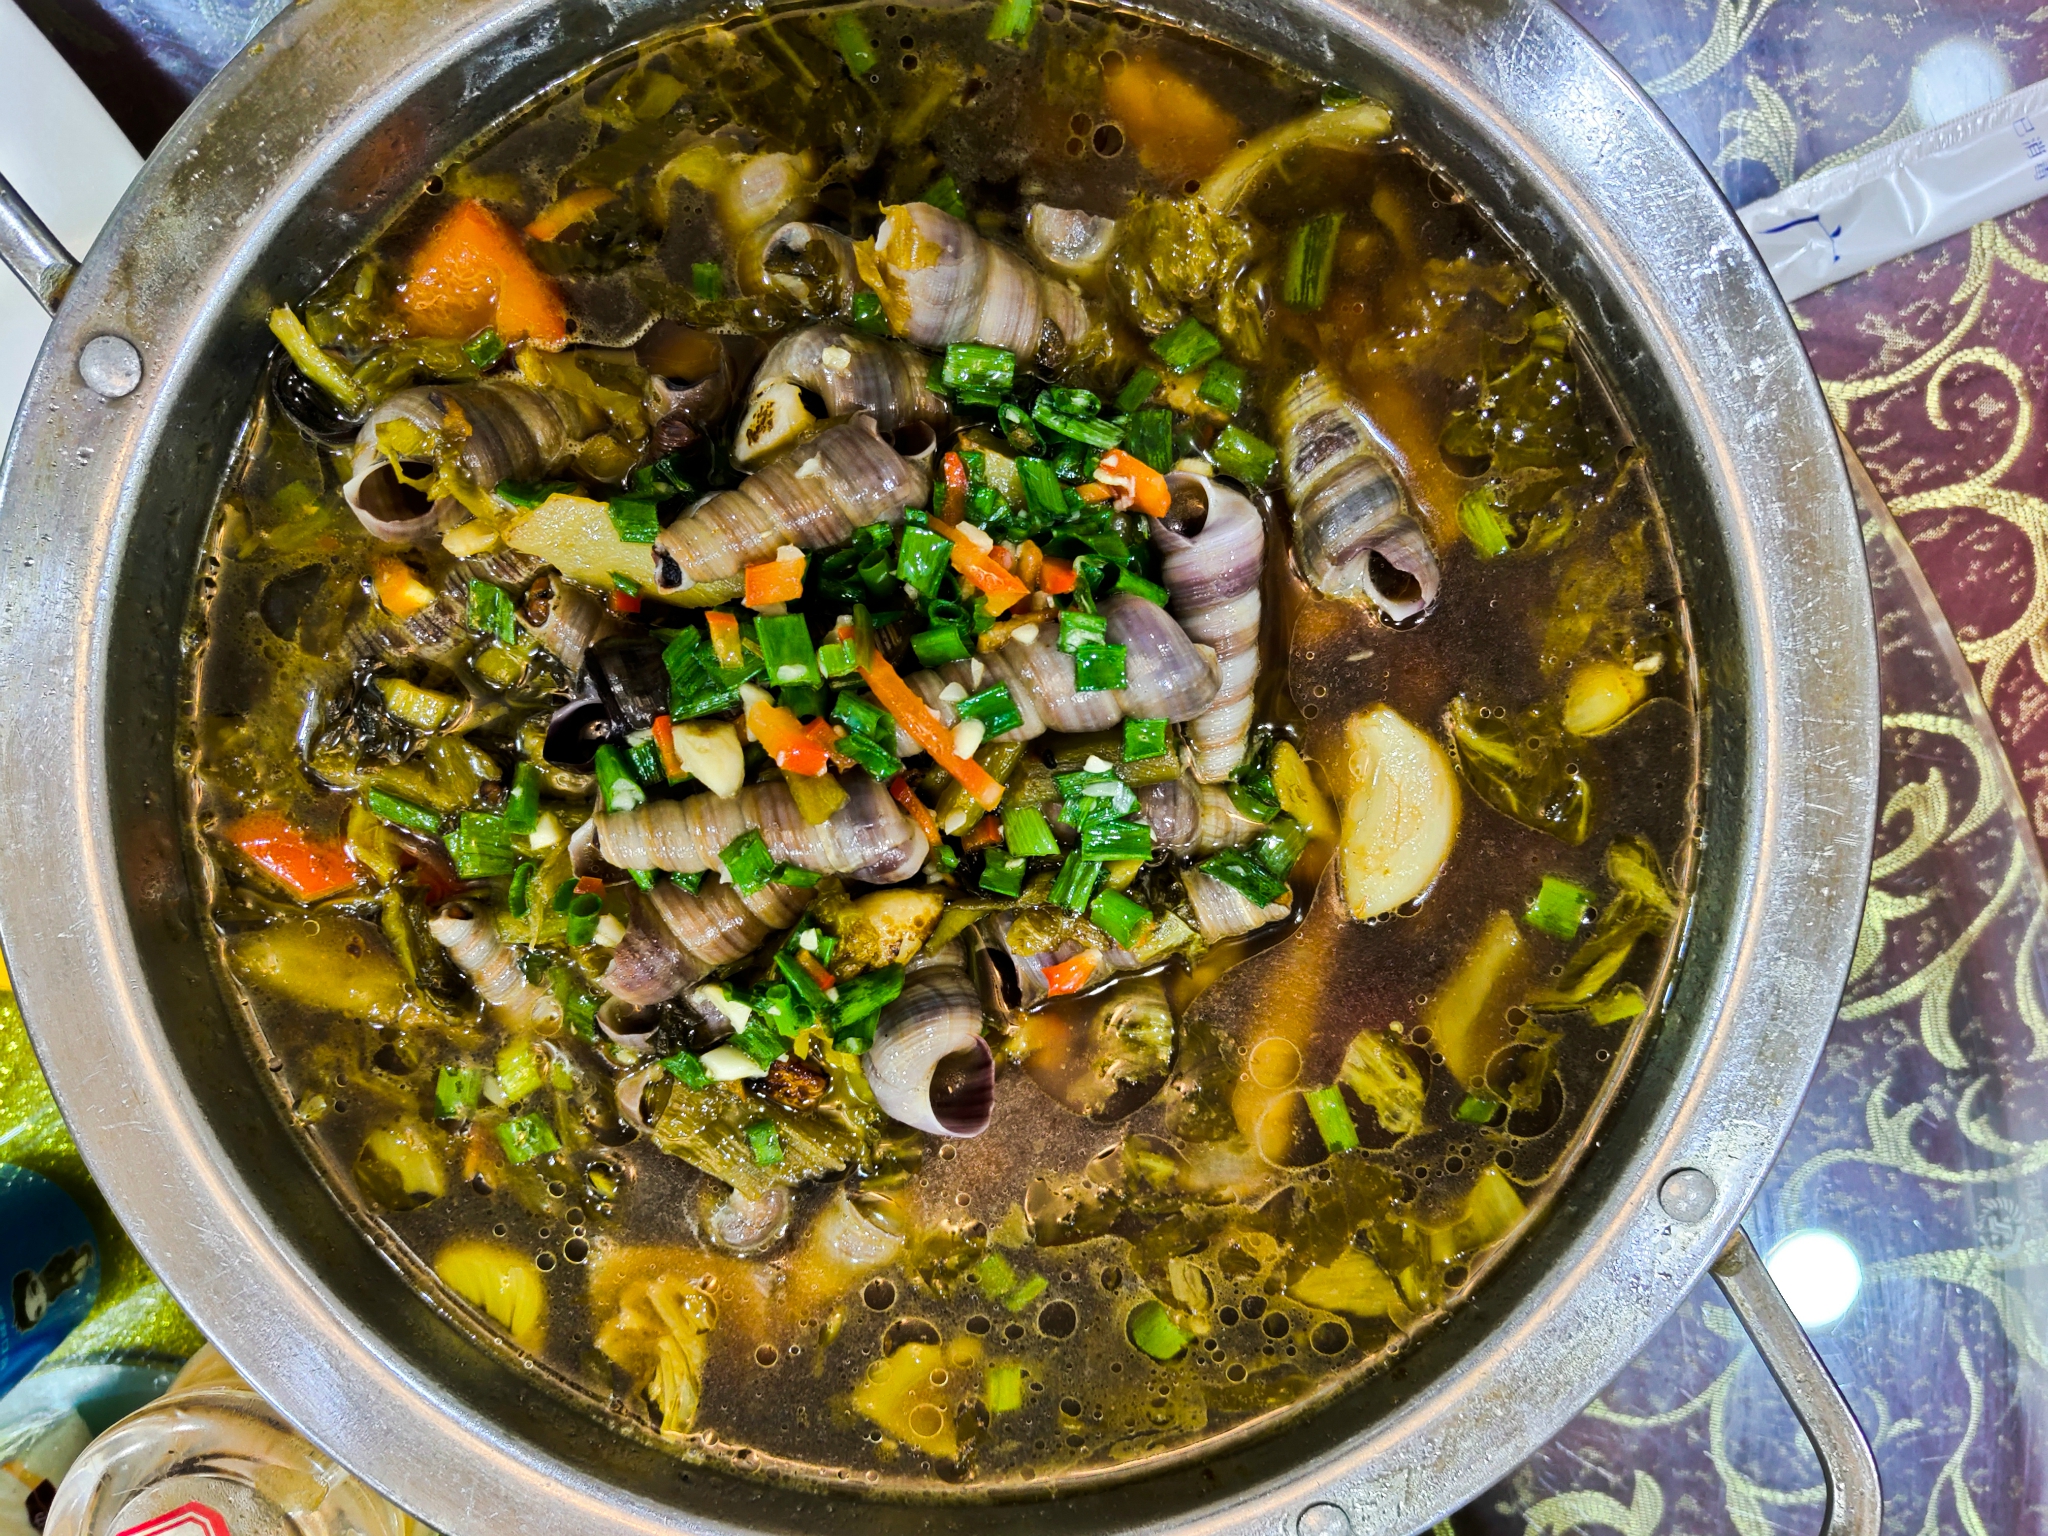 海带紫菜和海鲜是霞浦最有特色的美食摄影团雷导安排的正餐全部是在